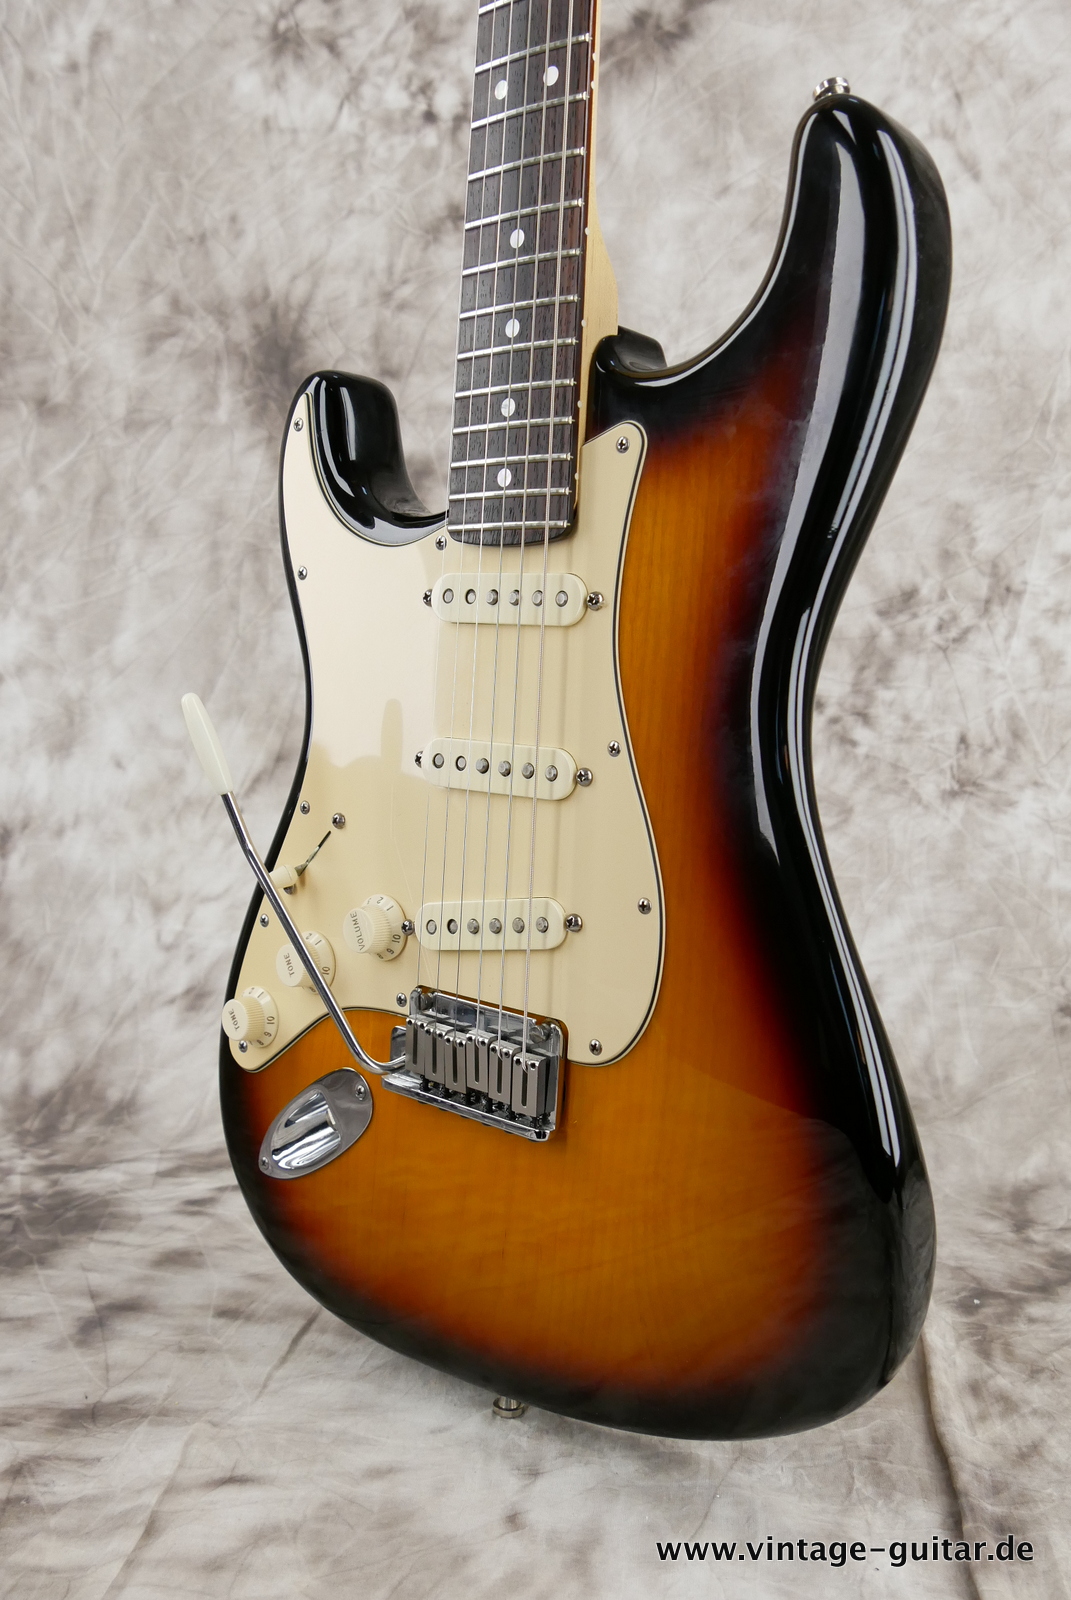 Fender_Stratocaster_American_Series_Diamond_Anniversary_60th_Left_handed_USA_sunburst-010.JPG